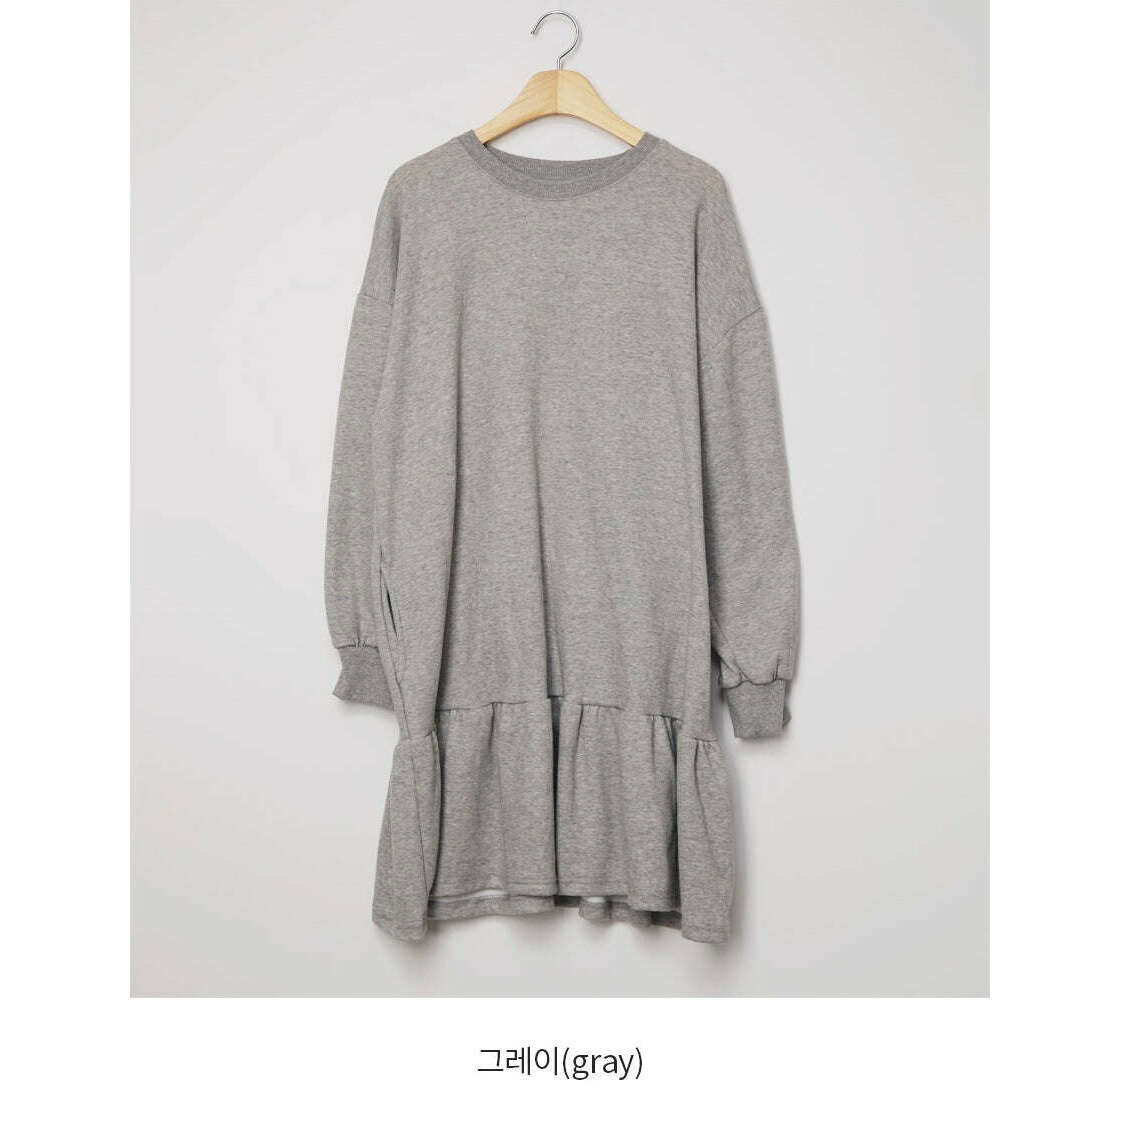 MUMMY.cc:休閒衛衣荷葉邊寬鬆連身裙:Gray